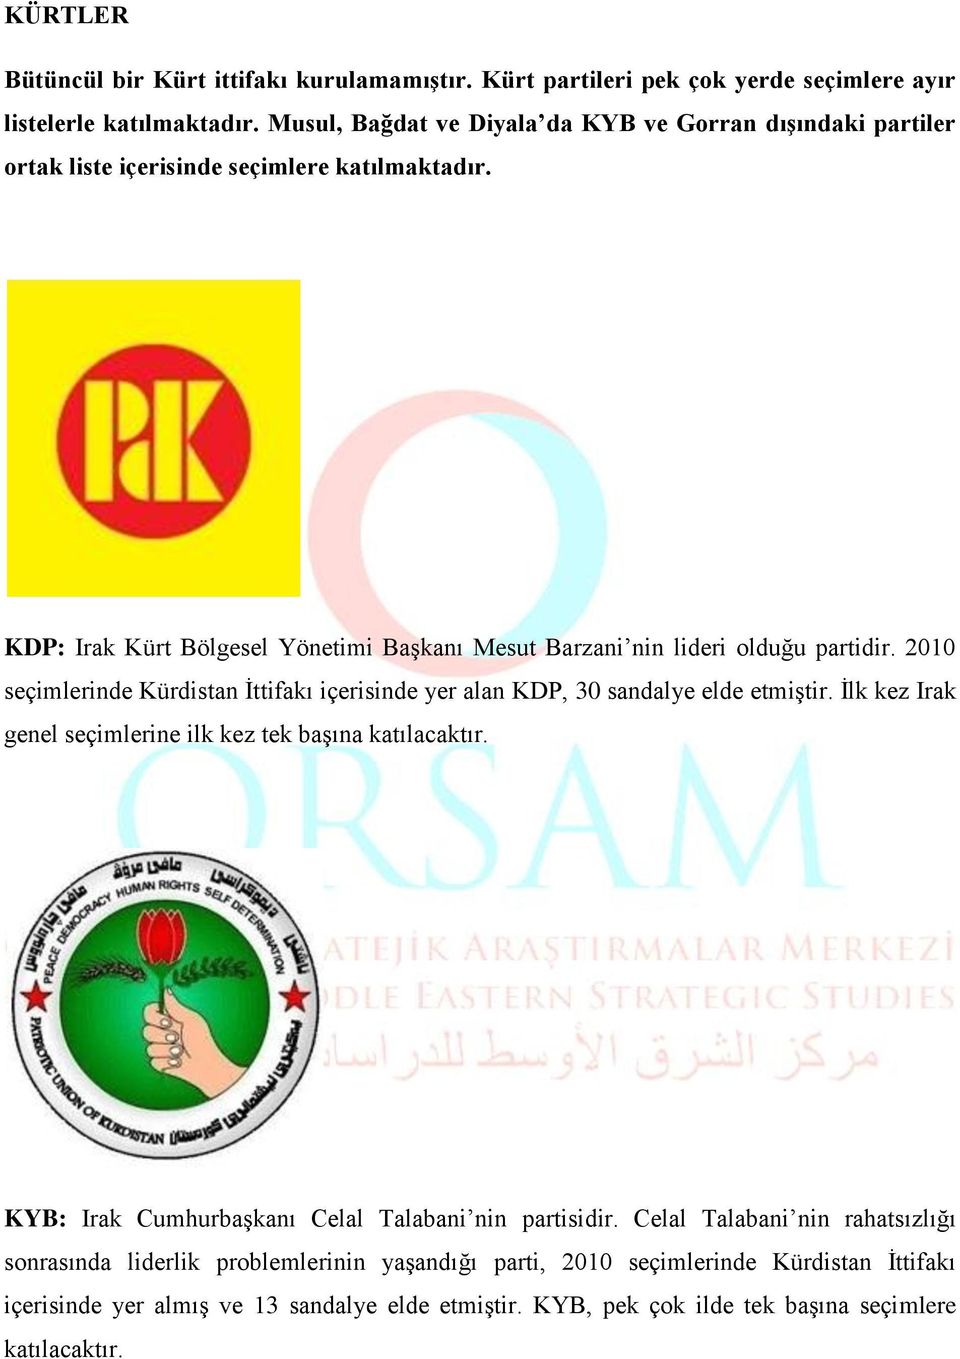 KDP: Irak Kürt Bölgesel Yönetimi Başkanı Mesut Barzani nin lideri olduğu partidir. 2010 seçimlerinde Kürdistan İttifakı içerisinde yer alan KDP, 30 sandalye elde etmiştir.